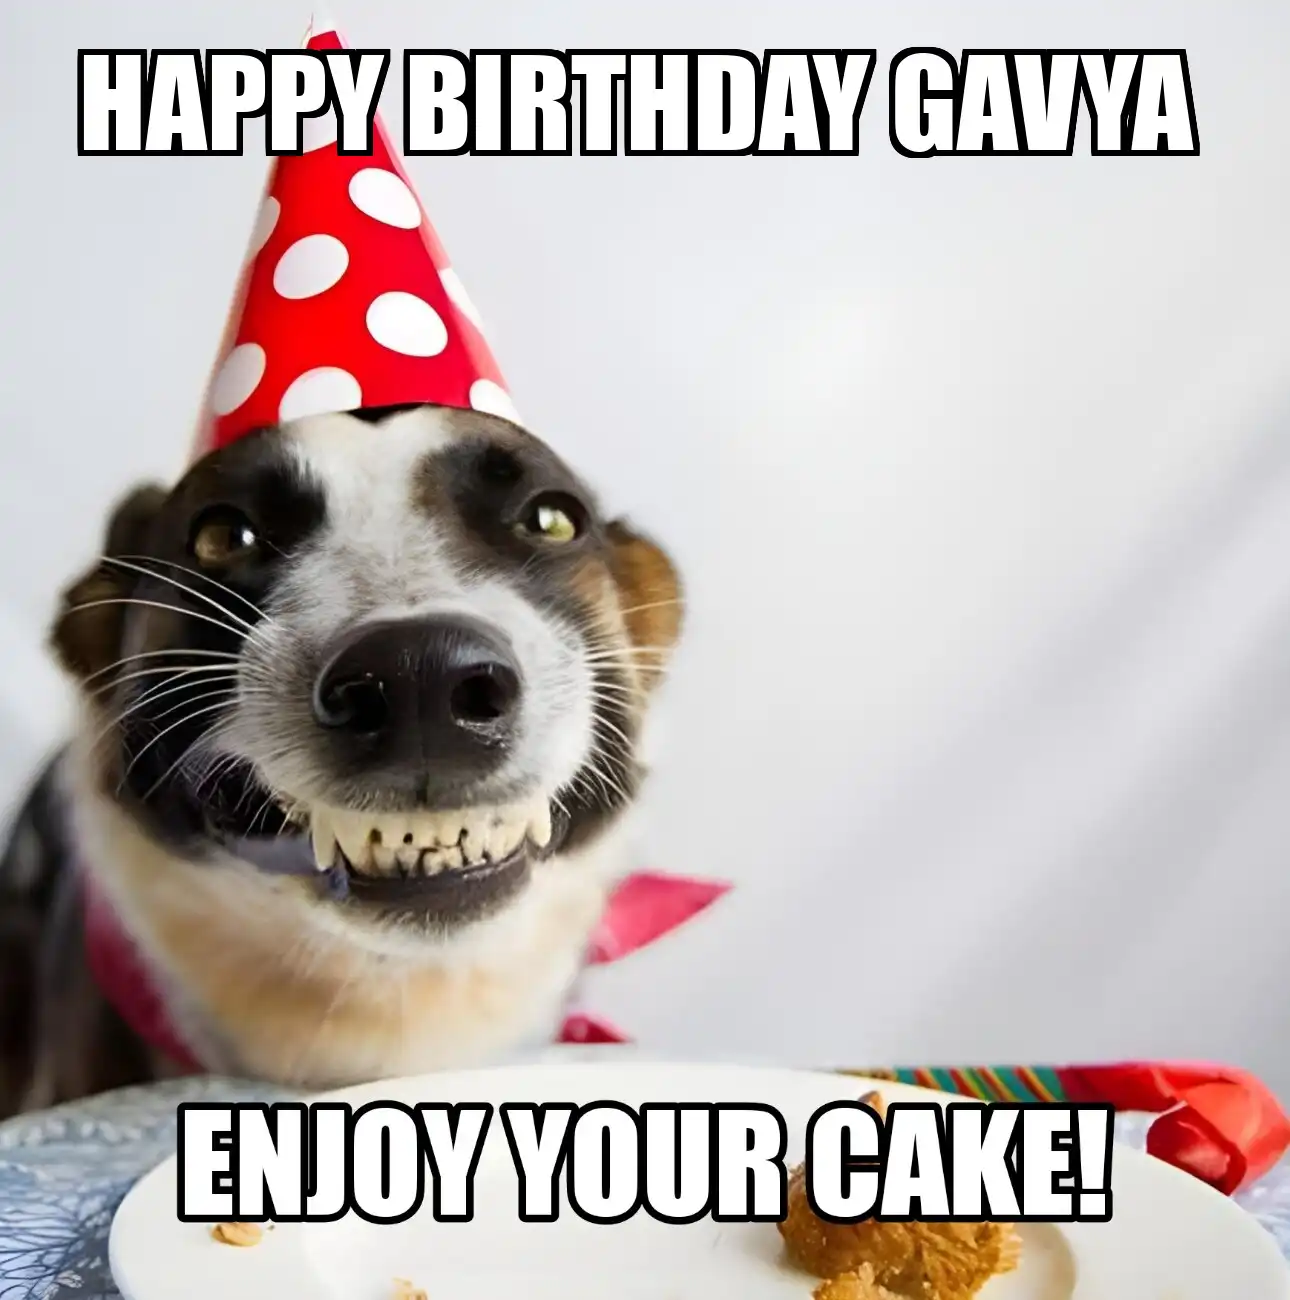 Happy Birthday Gavya Enjoy Your Cake Dog Meme